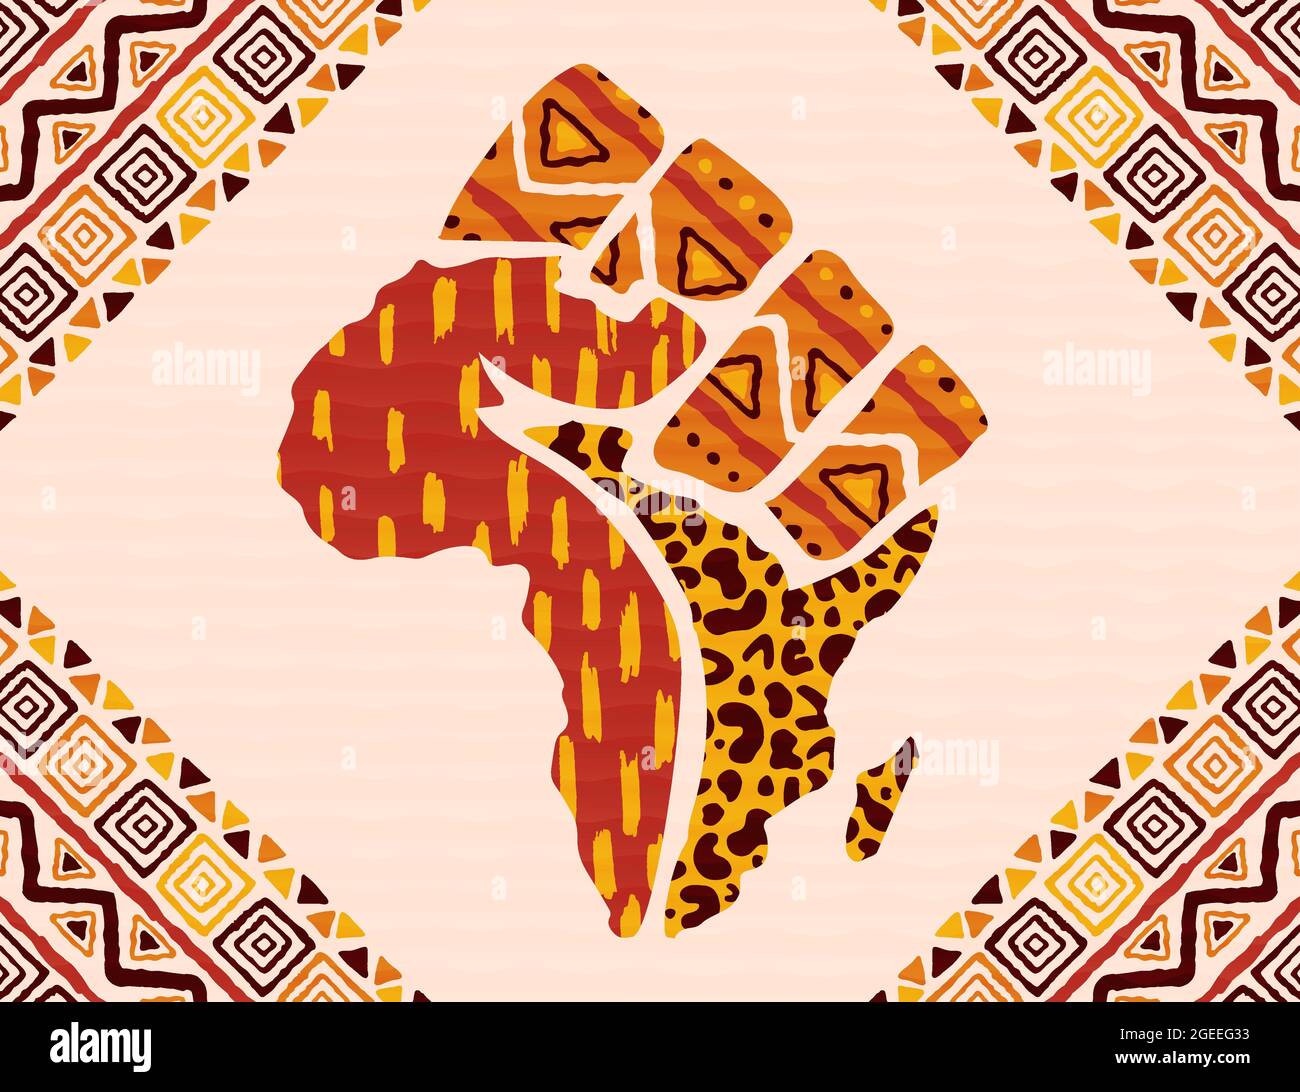 Afrika Kontinent Karte Hintergrund Illustration aus traditionellen afrikanischen Kultur Textur und Hand Faust für Freiheit Konzept oder sozialen Kampf. Stock Vektor